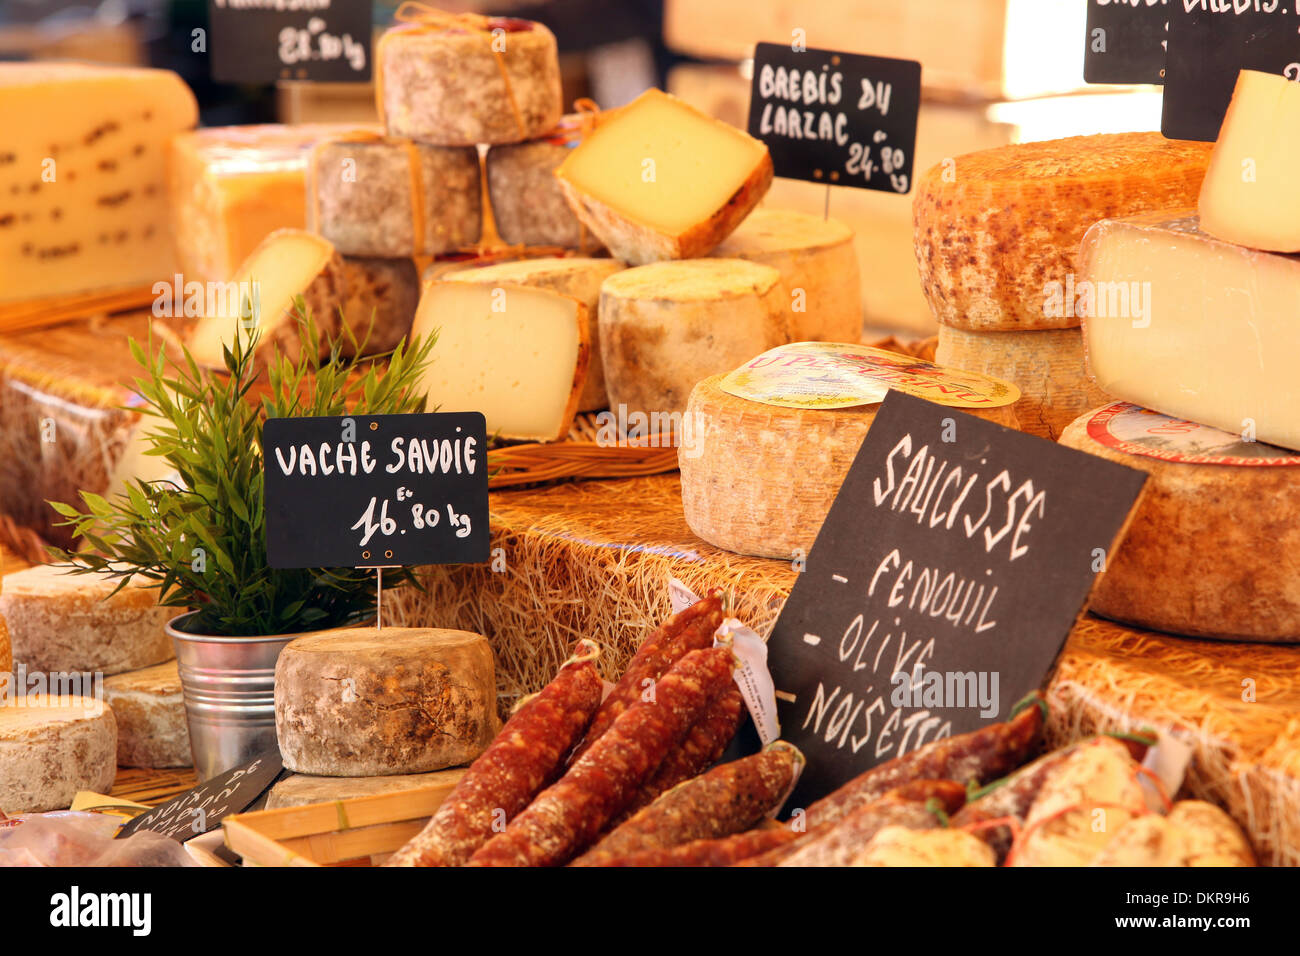 Le fromage, saucisse, marché, Provence, Vaucluse, France, sud de la France, de l'alimentation, manger, Banque D'Images